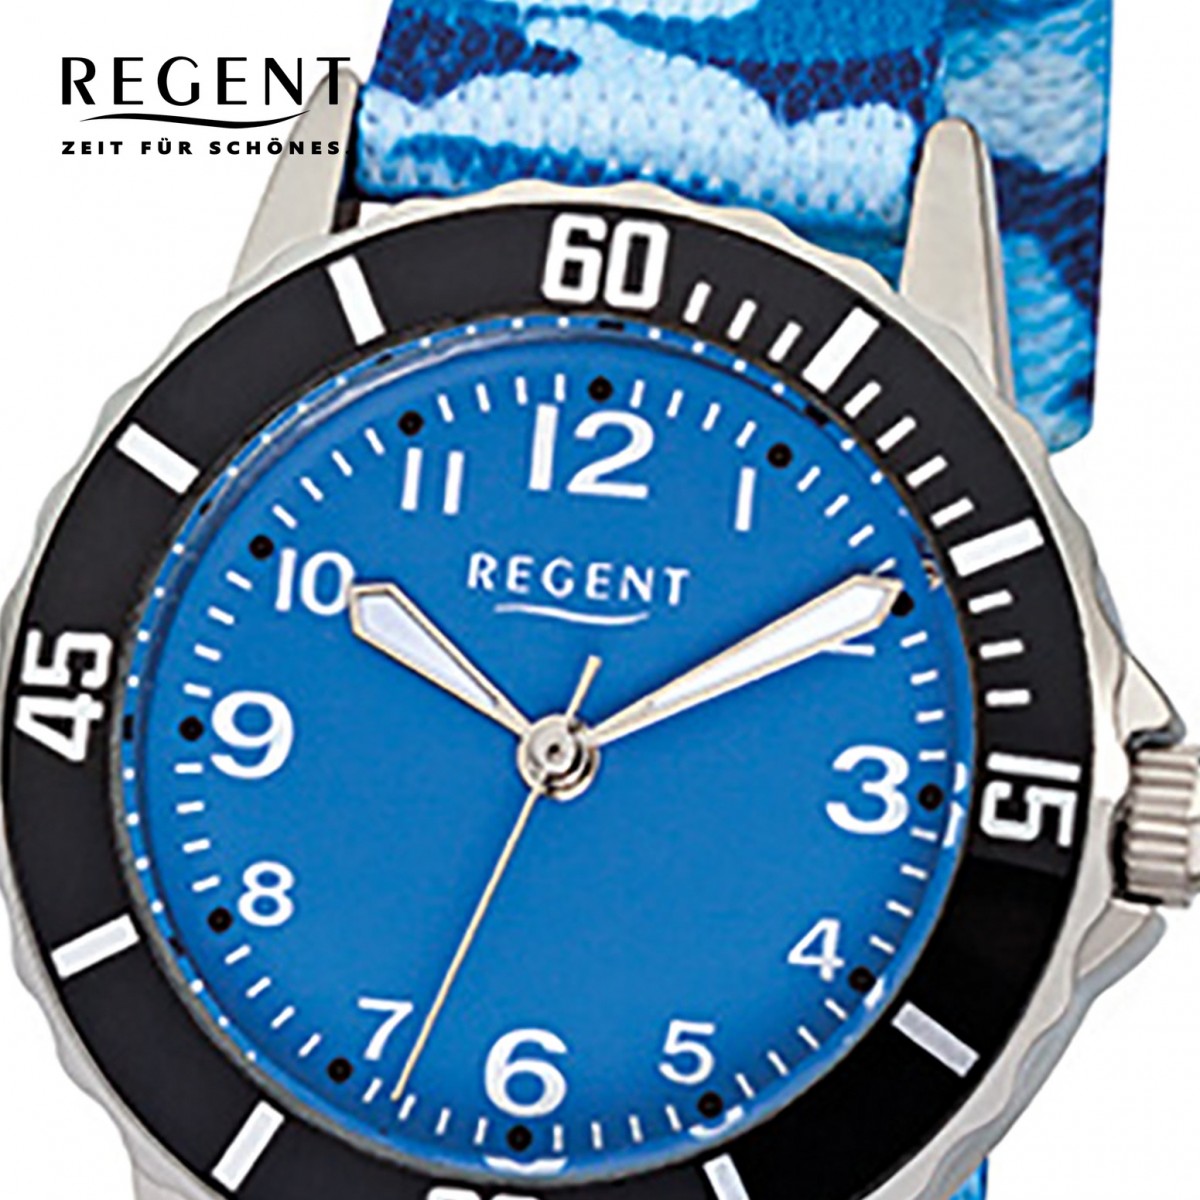 Regent Kinder-Armbanduhr F-940 URF940 blau Textil, Stoff-Armband Quarz-Uhr